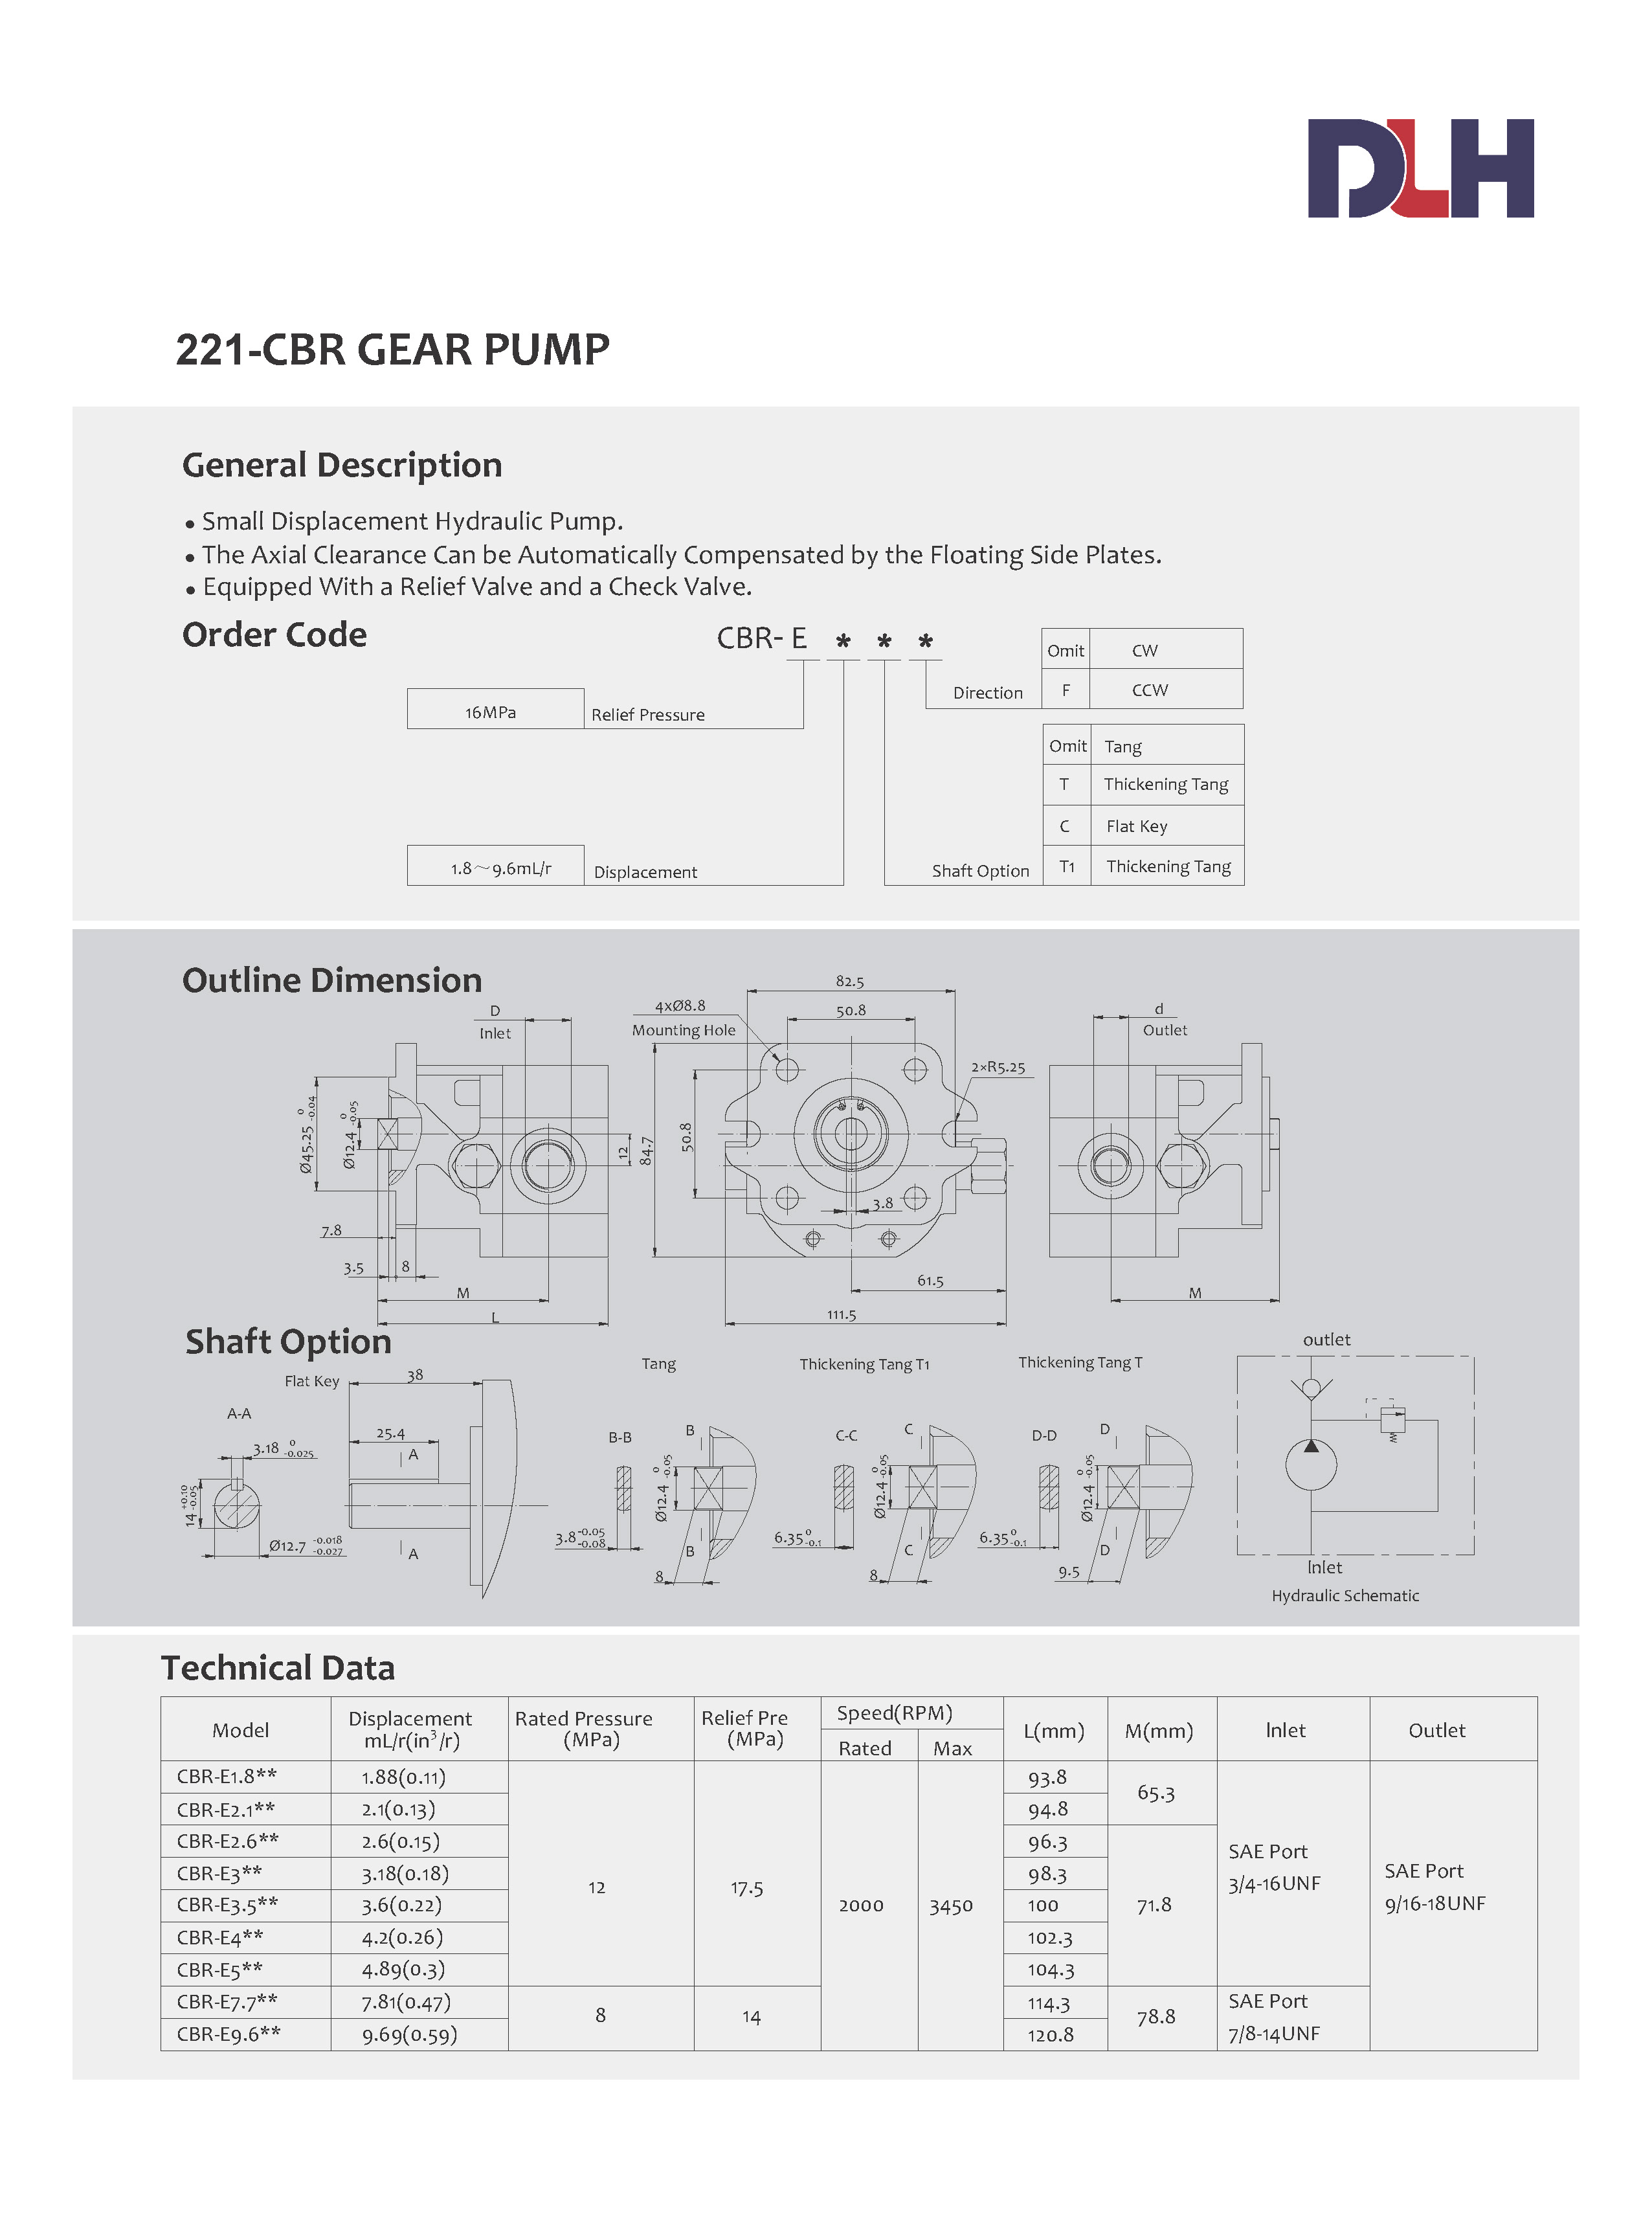 CBR Gear Pumps